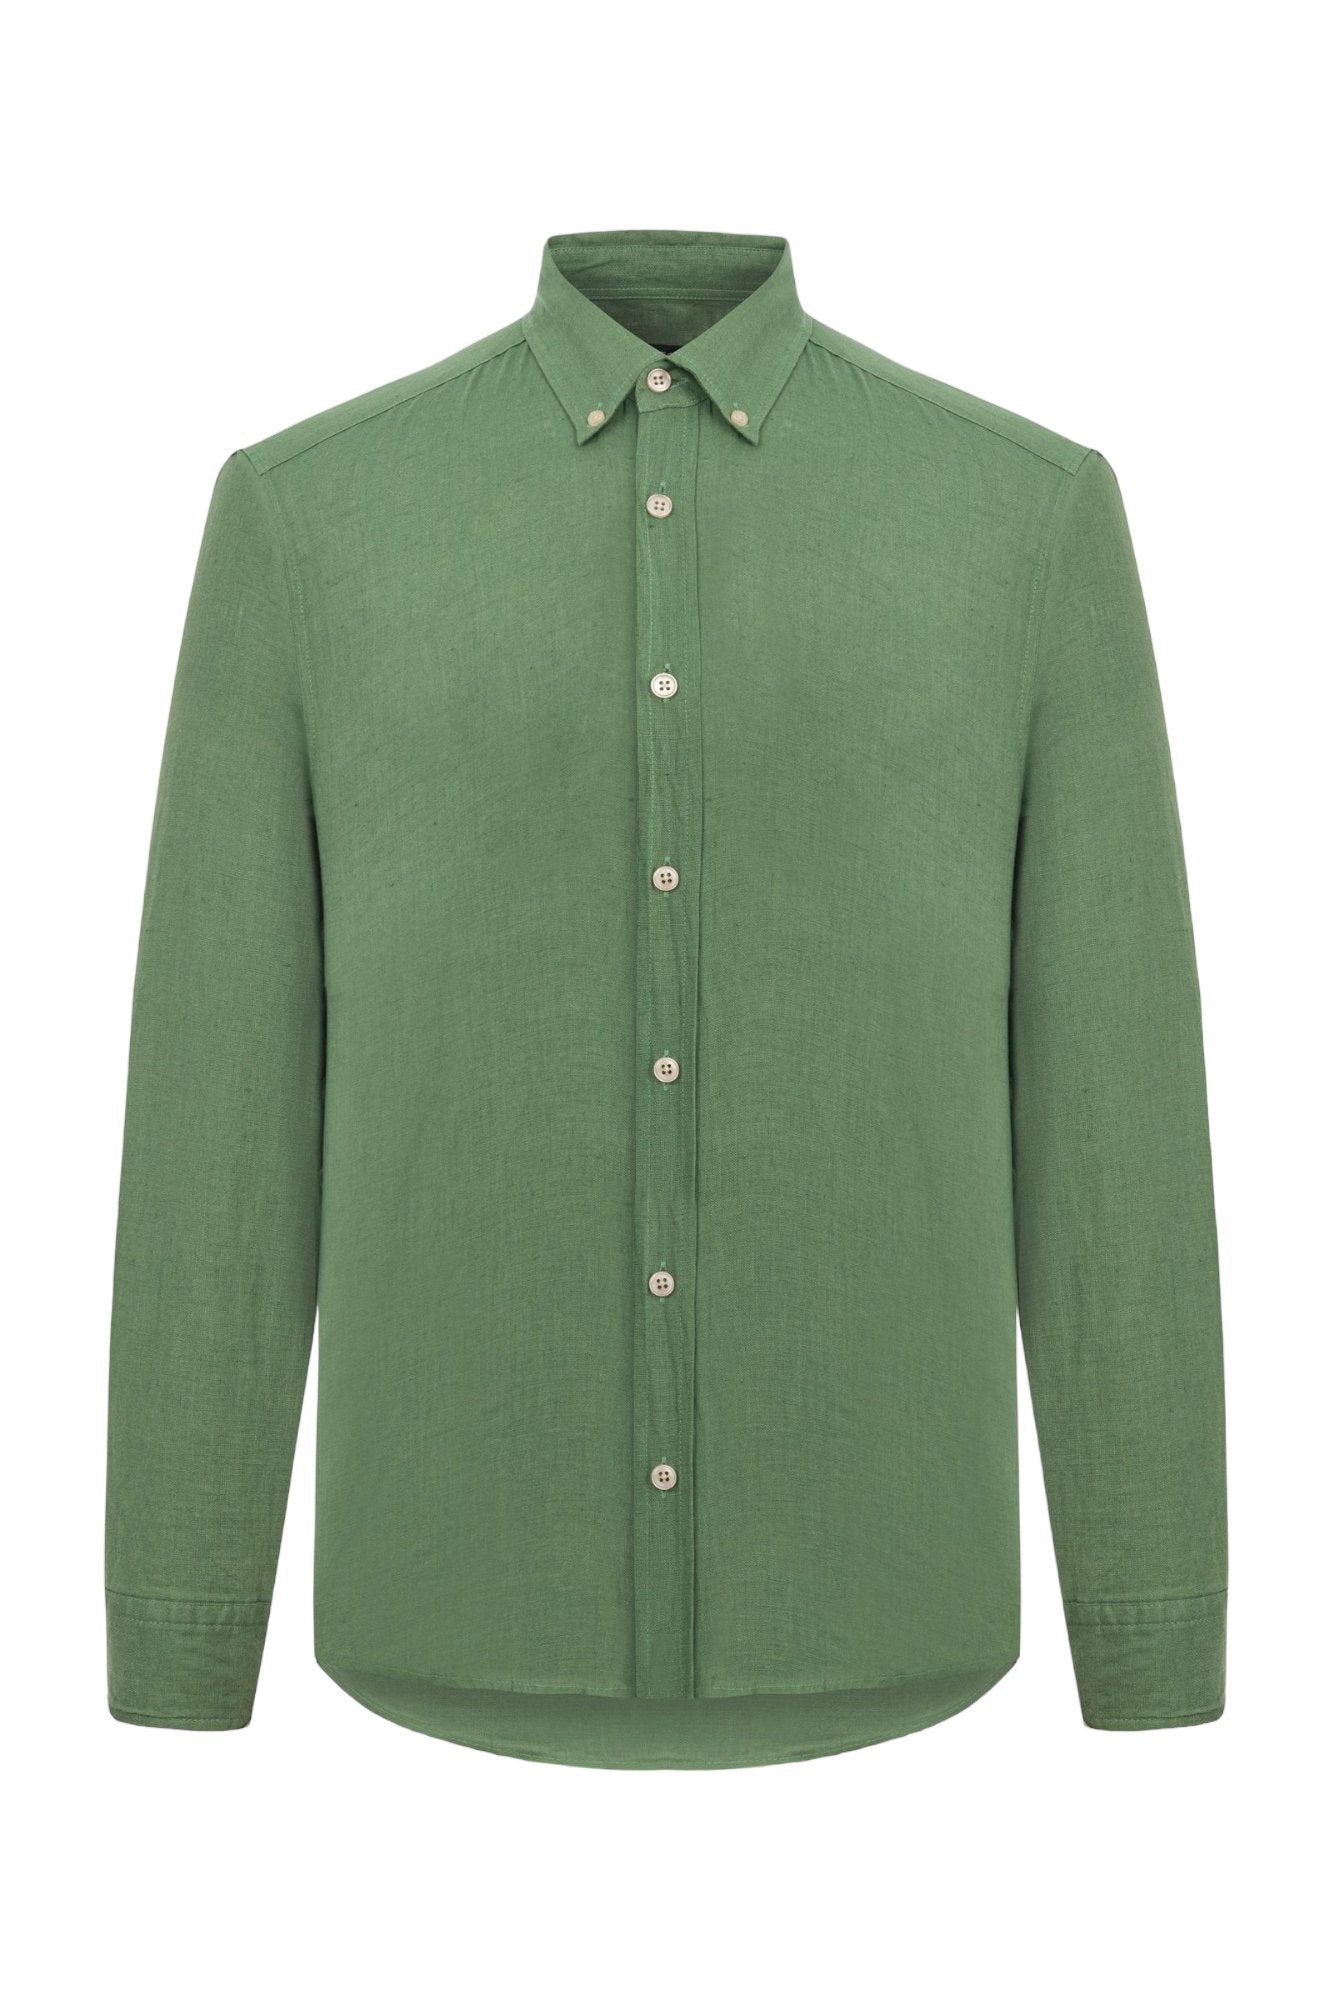 Classic Fit Linen Green Long Sleeve Shirt Shirt 99percenthandmade   